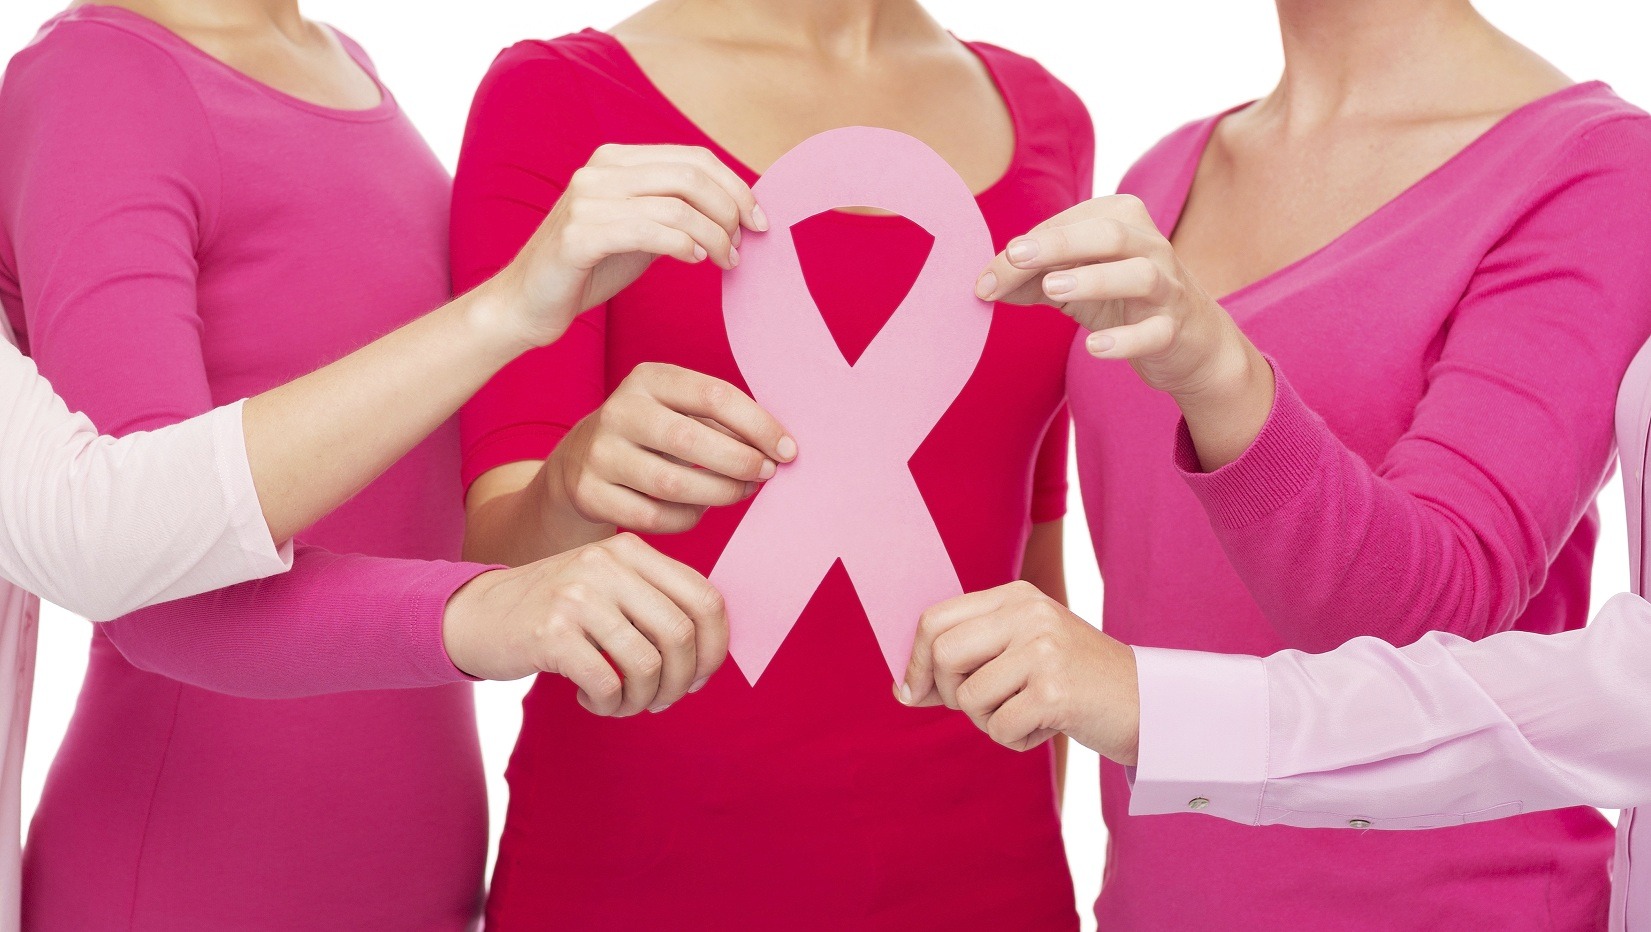 Medic oncolog: „Kilogramele in plus influenteaza diferit riscul de aparitie a cancerului mamar, in functie de varsta”